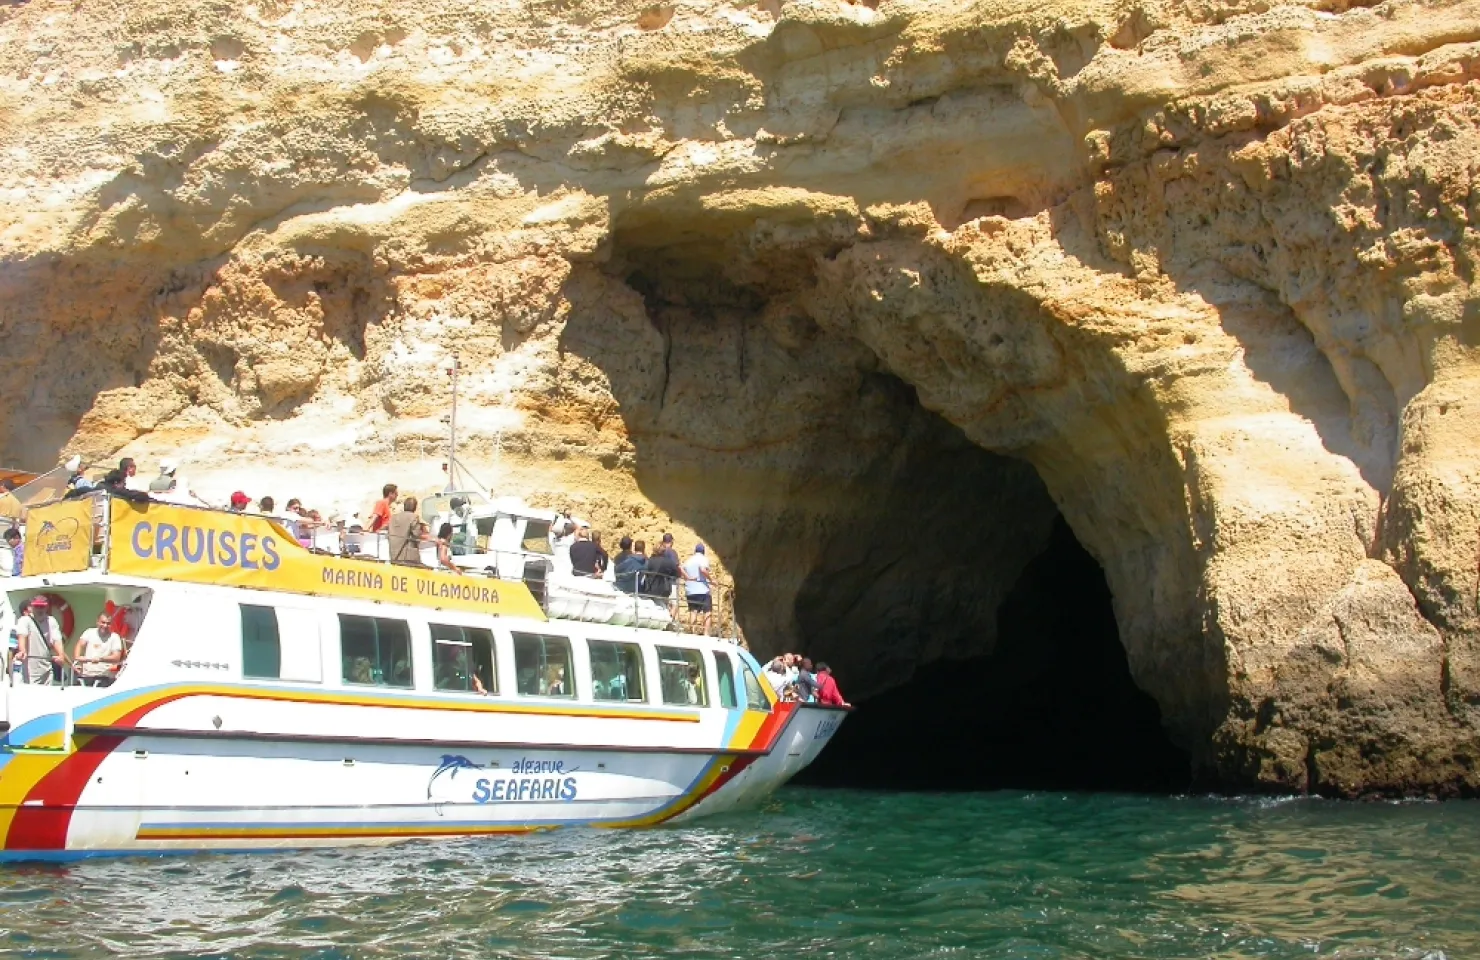 Algarve Sea Cave Tour - Algarve Boat Tours